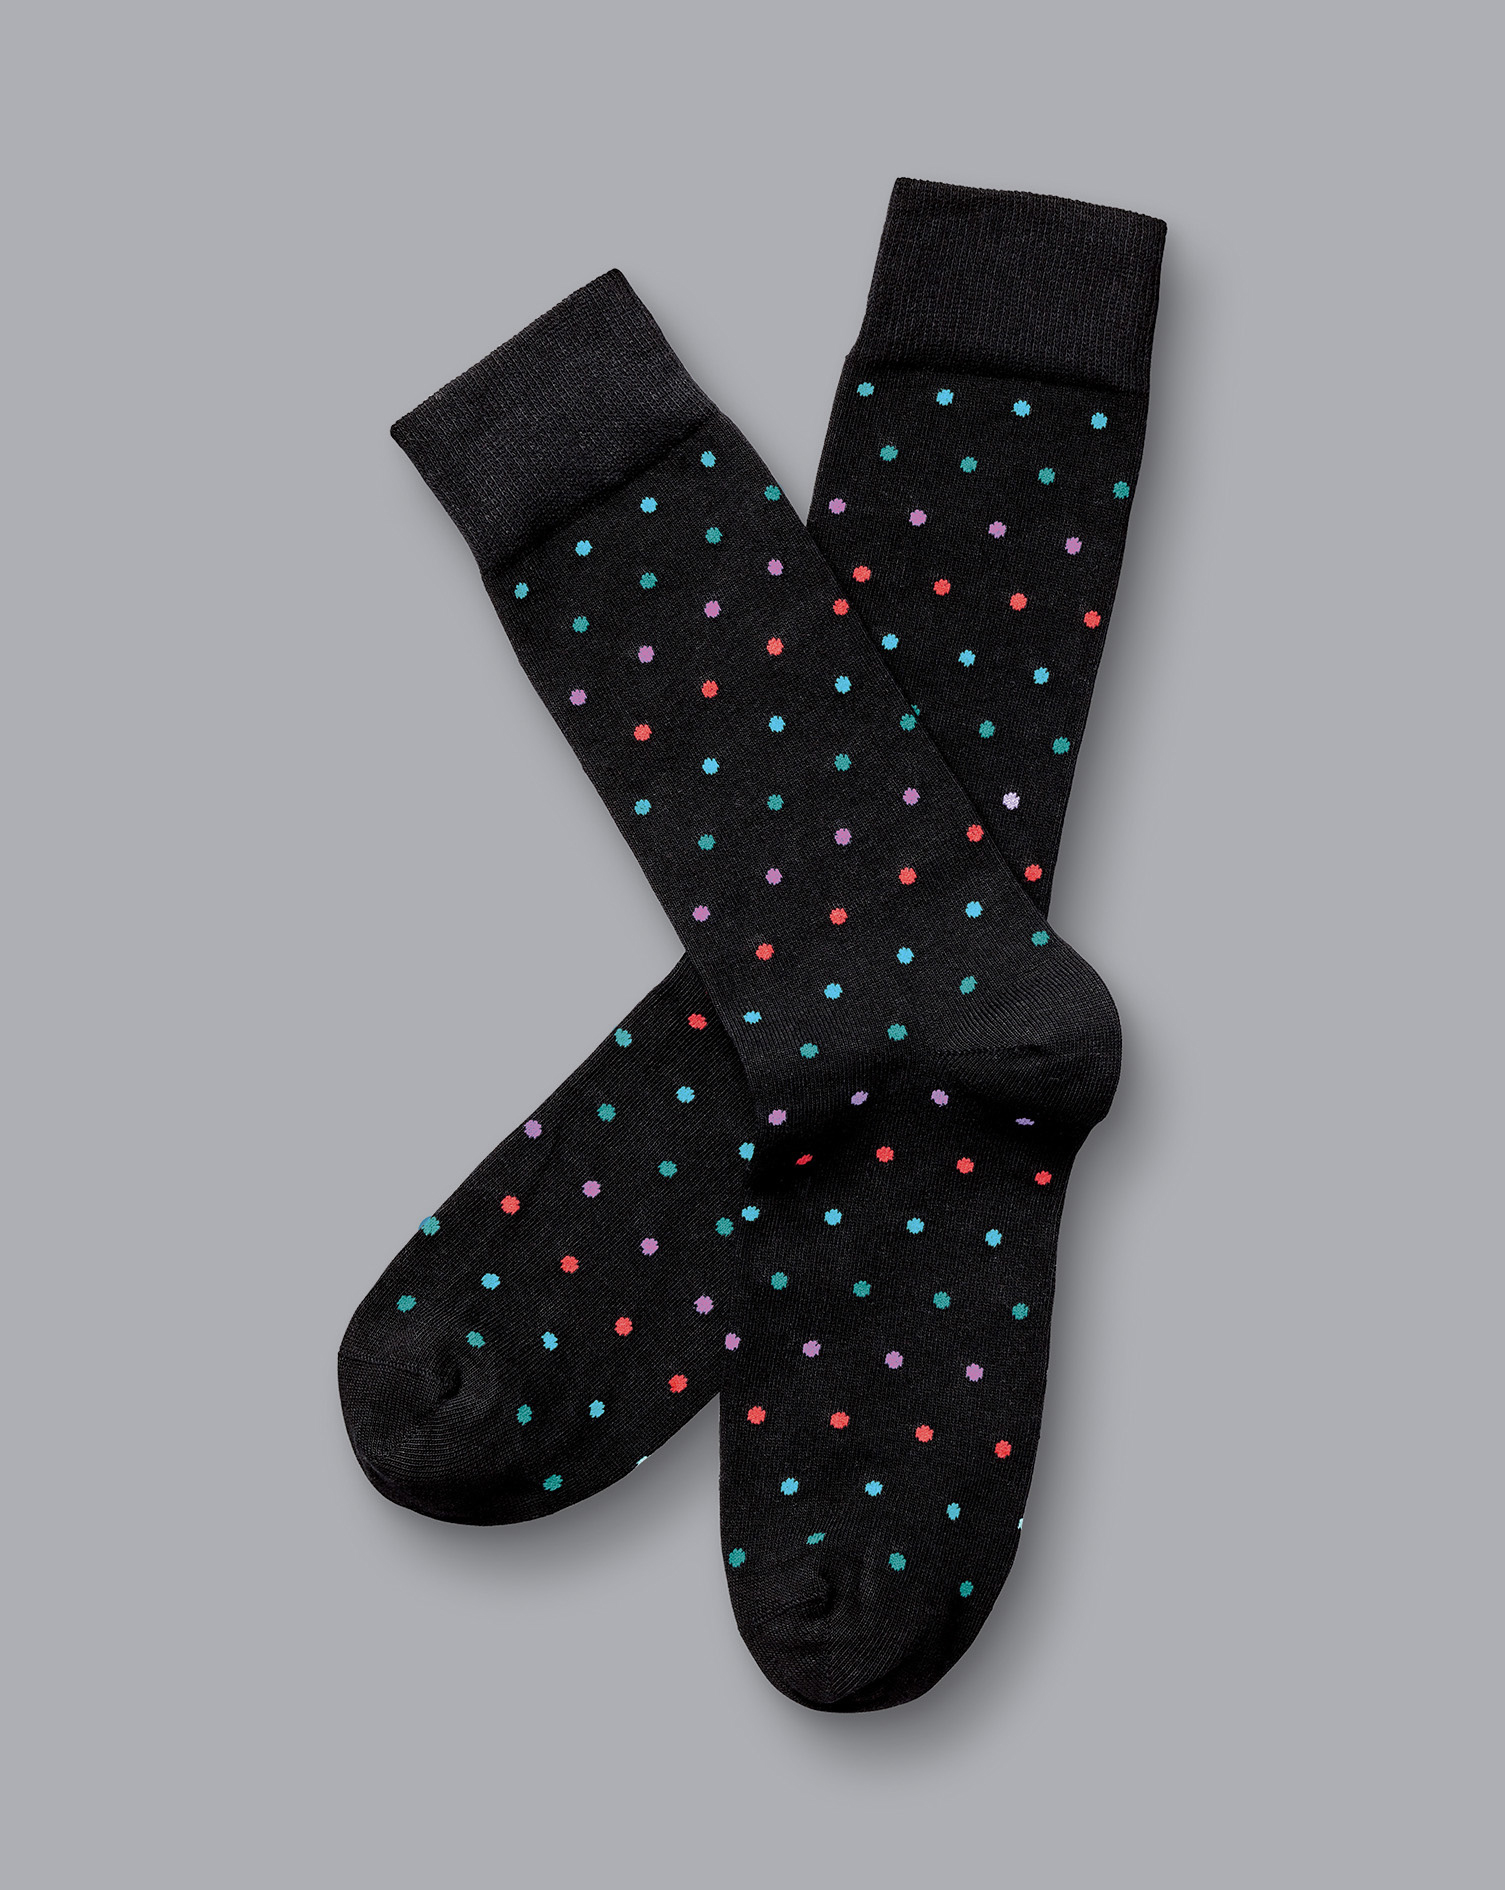 Men's Charles Tyrwhitt Multi Spot Socks - Black Size 10.5-13 Cotton
